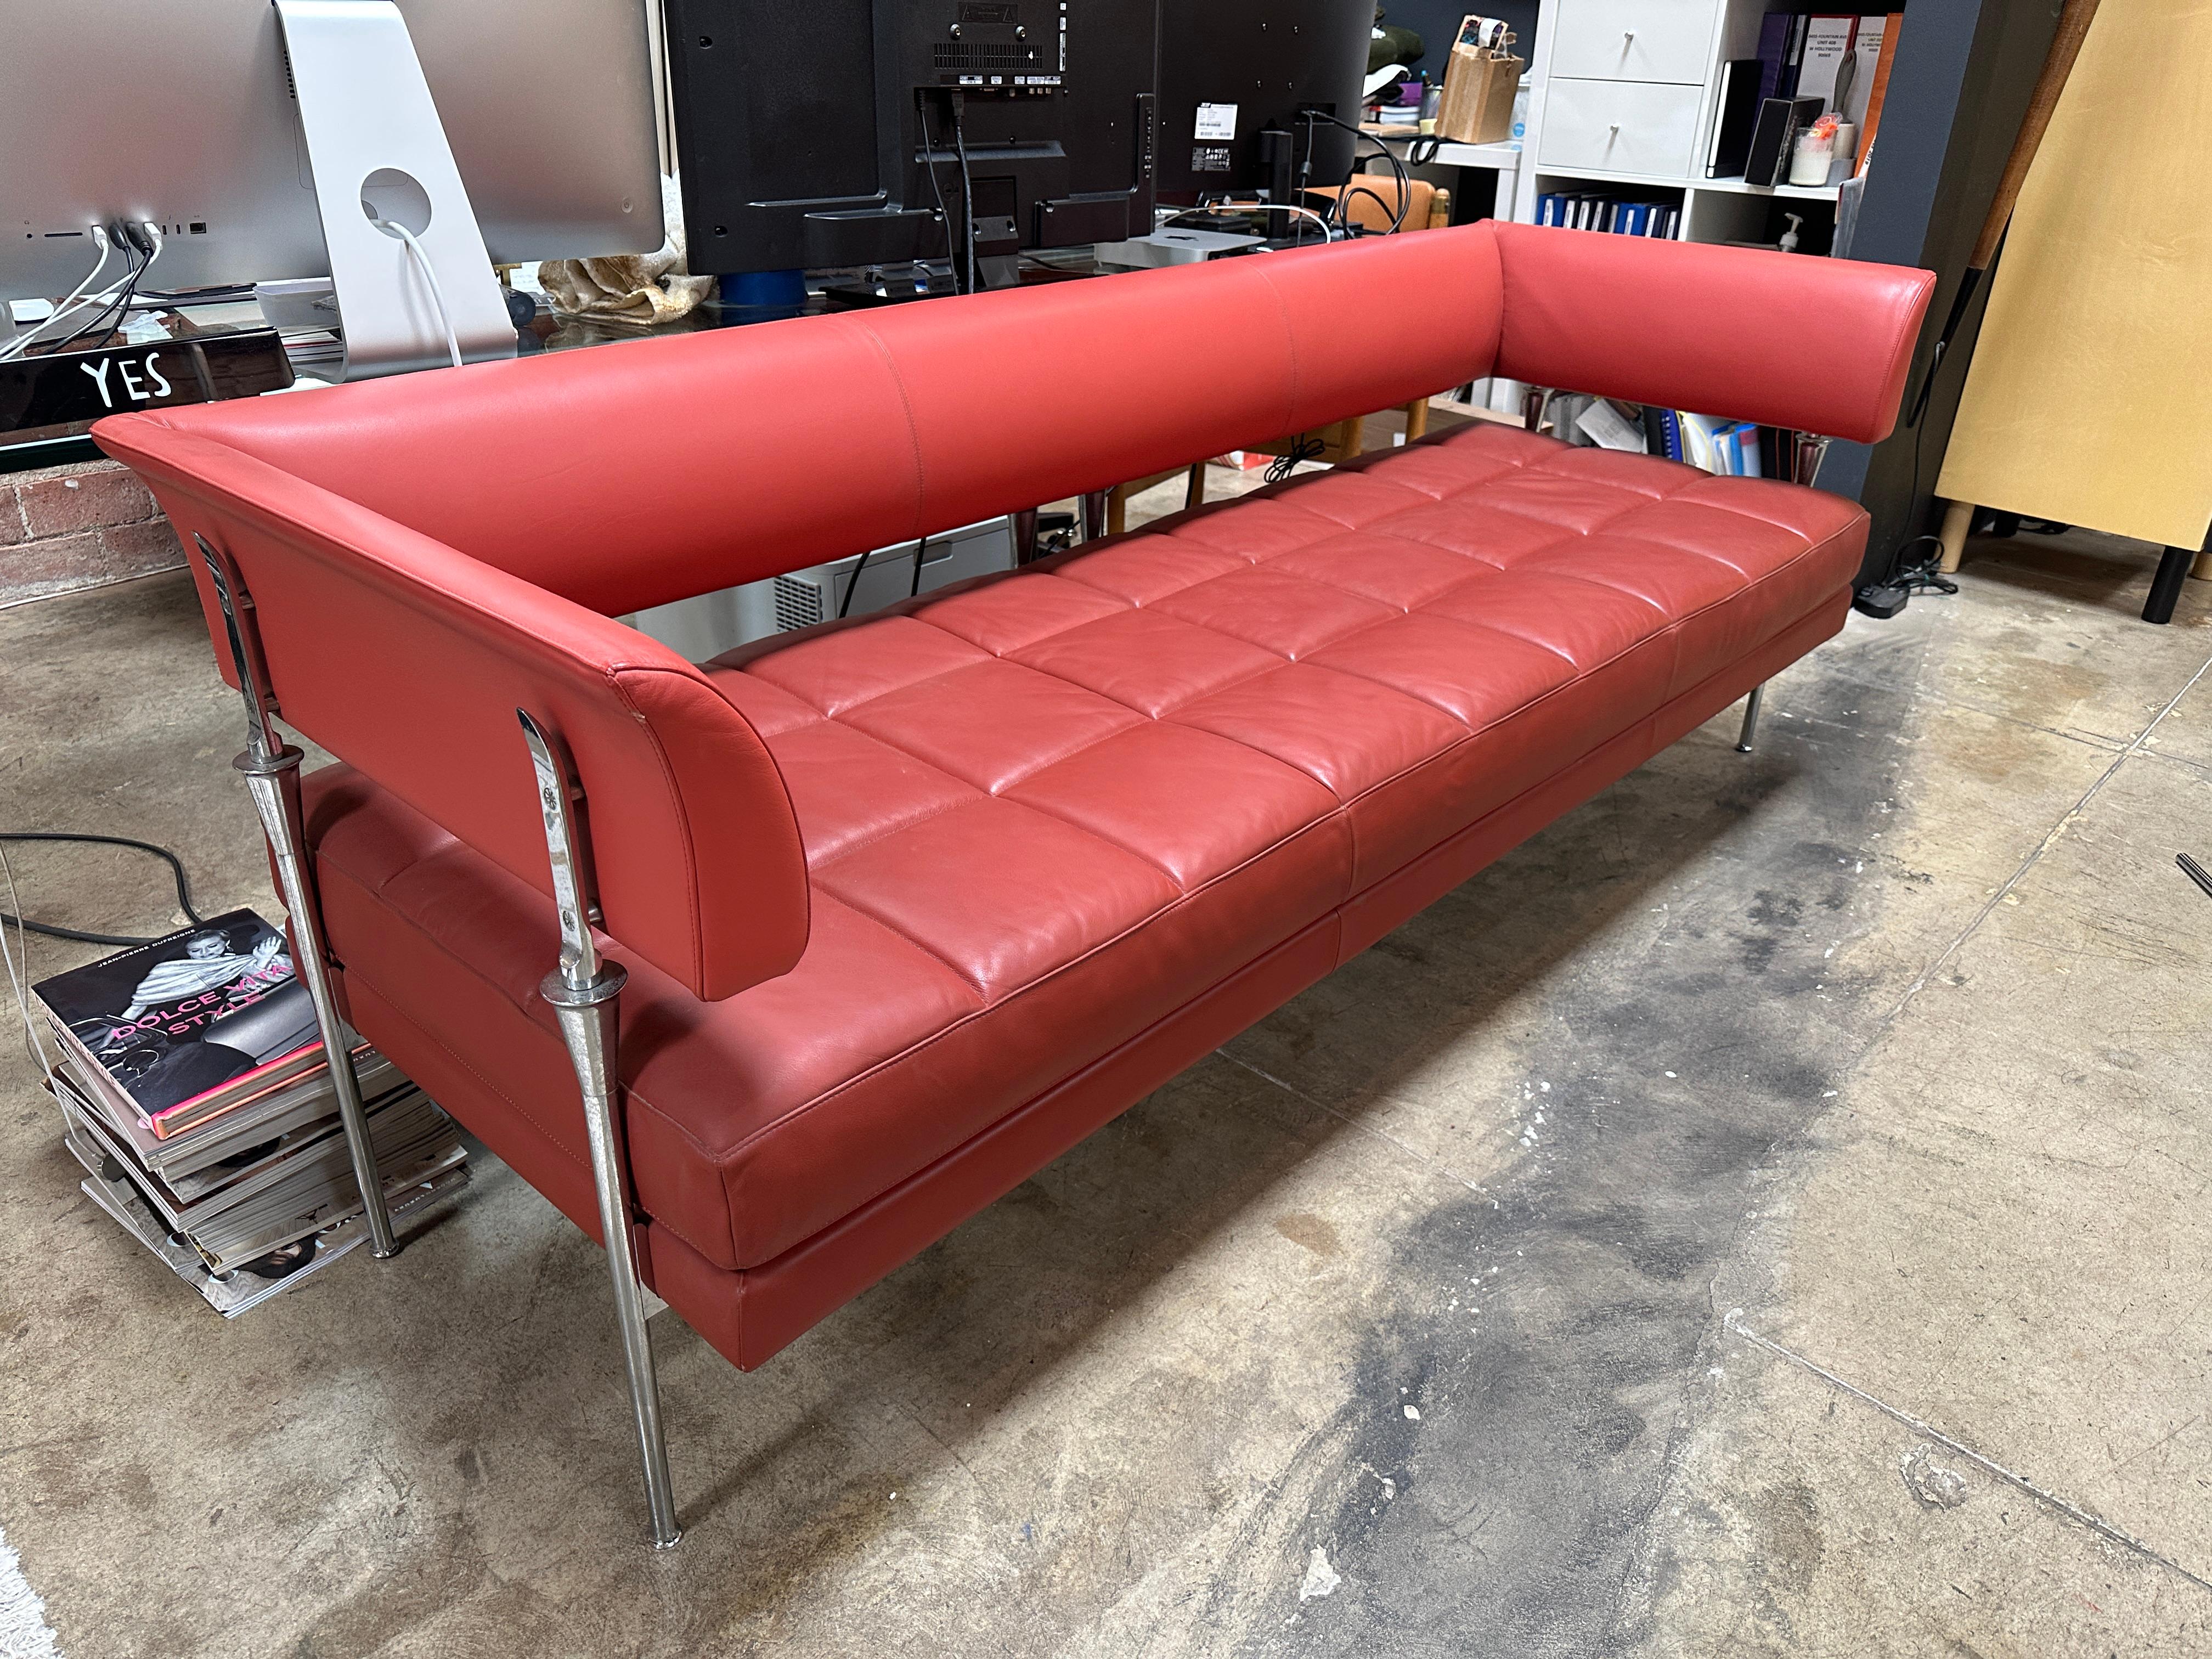 Le canapé Hydra Castor est un meuble conçu par Luca Scacchetti pour Poltrona Frau, une entreprise italienne d'ameublement. Il présente une combinaison frappante de cuir rouge et de chrome, avec un design épuré et moderne qui reflète l'esthétique des